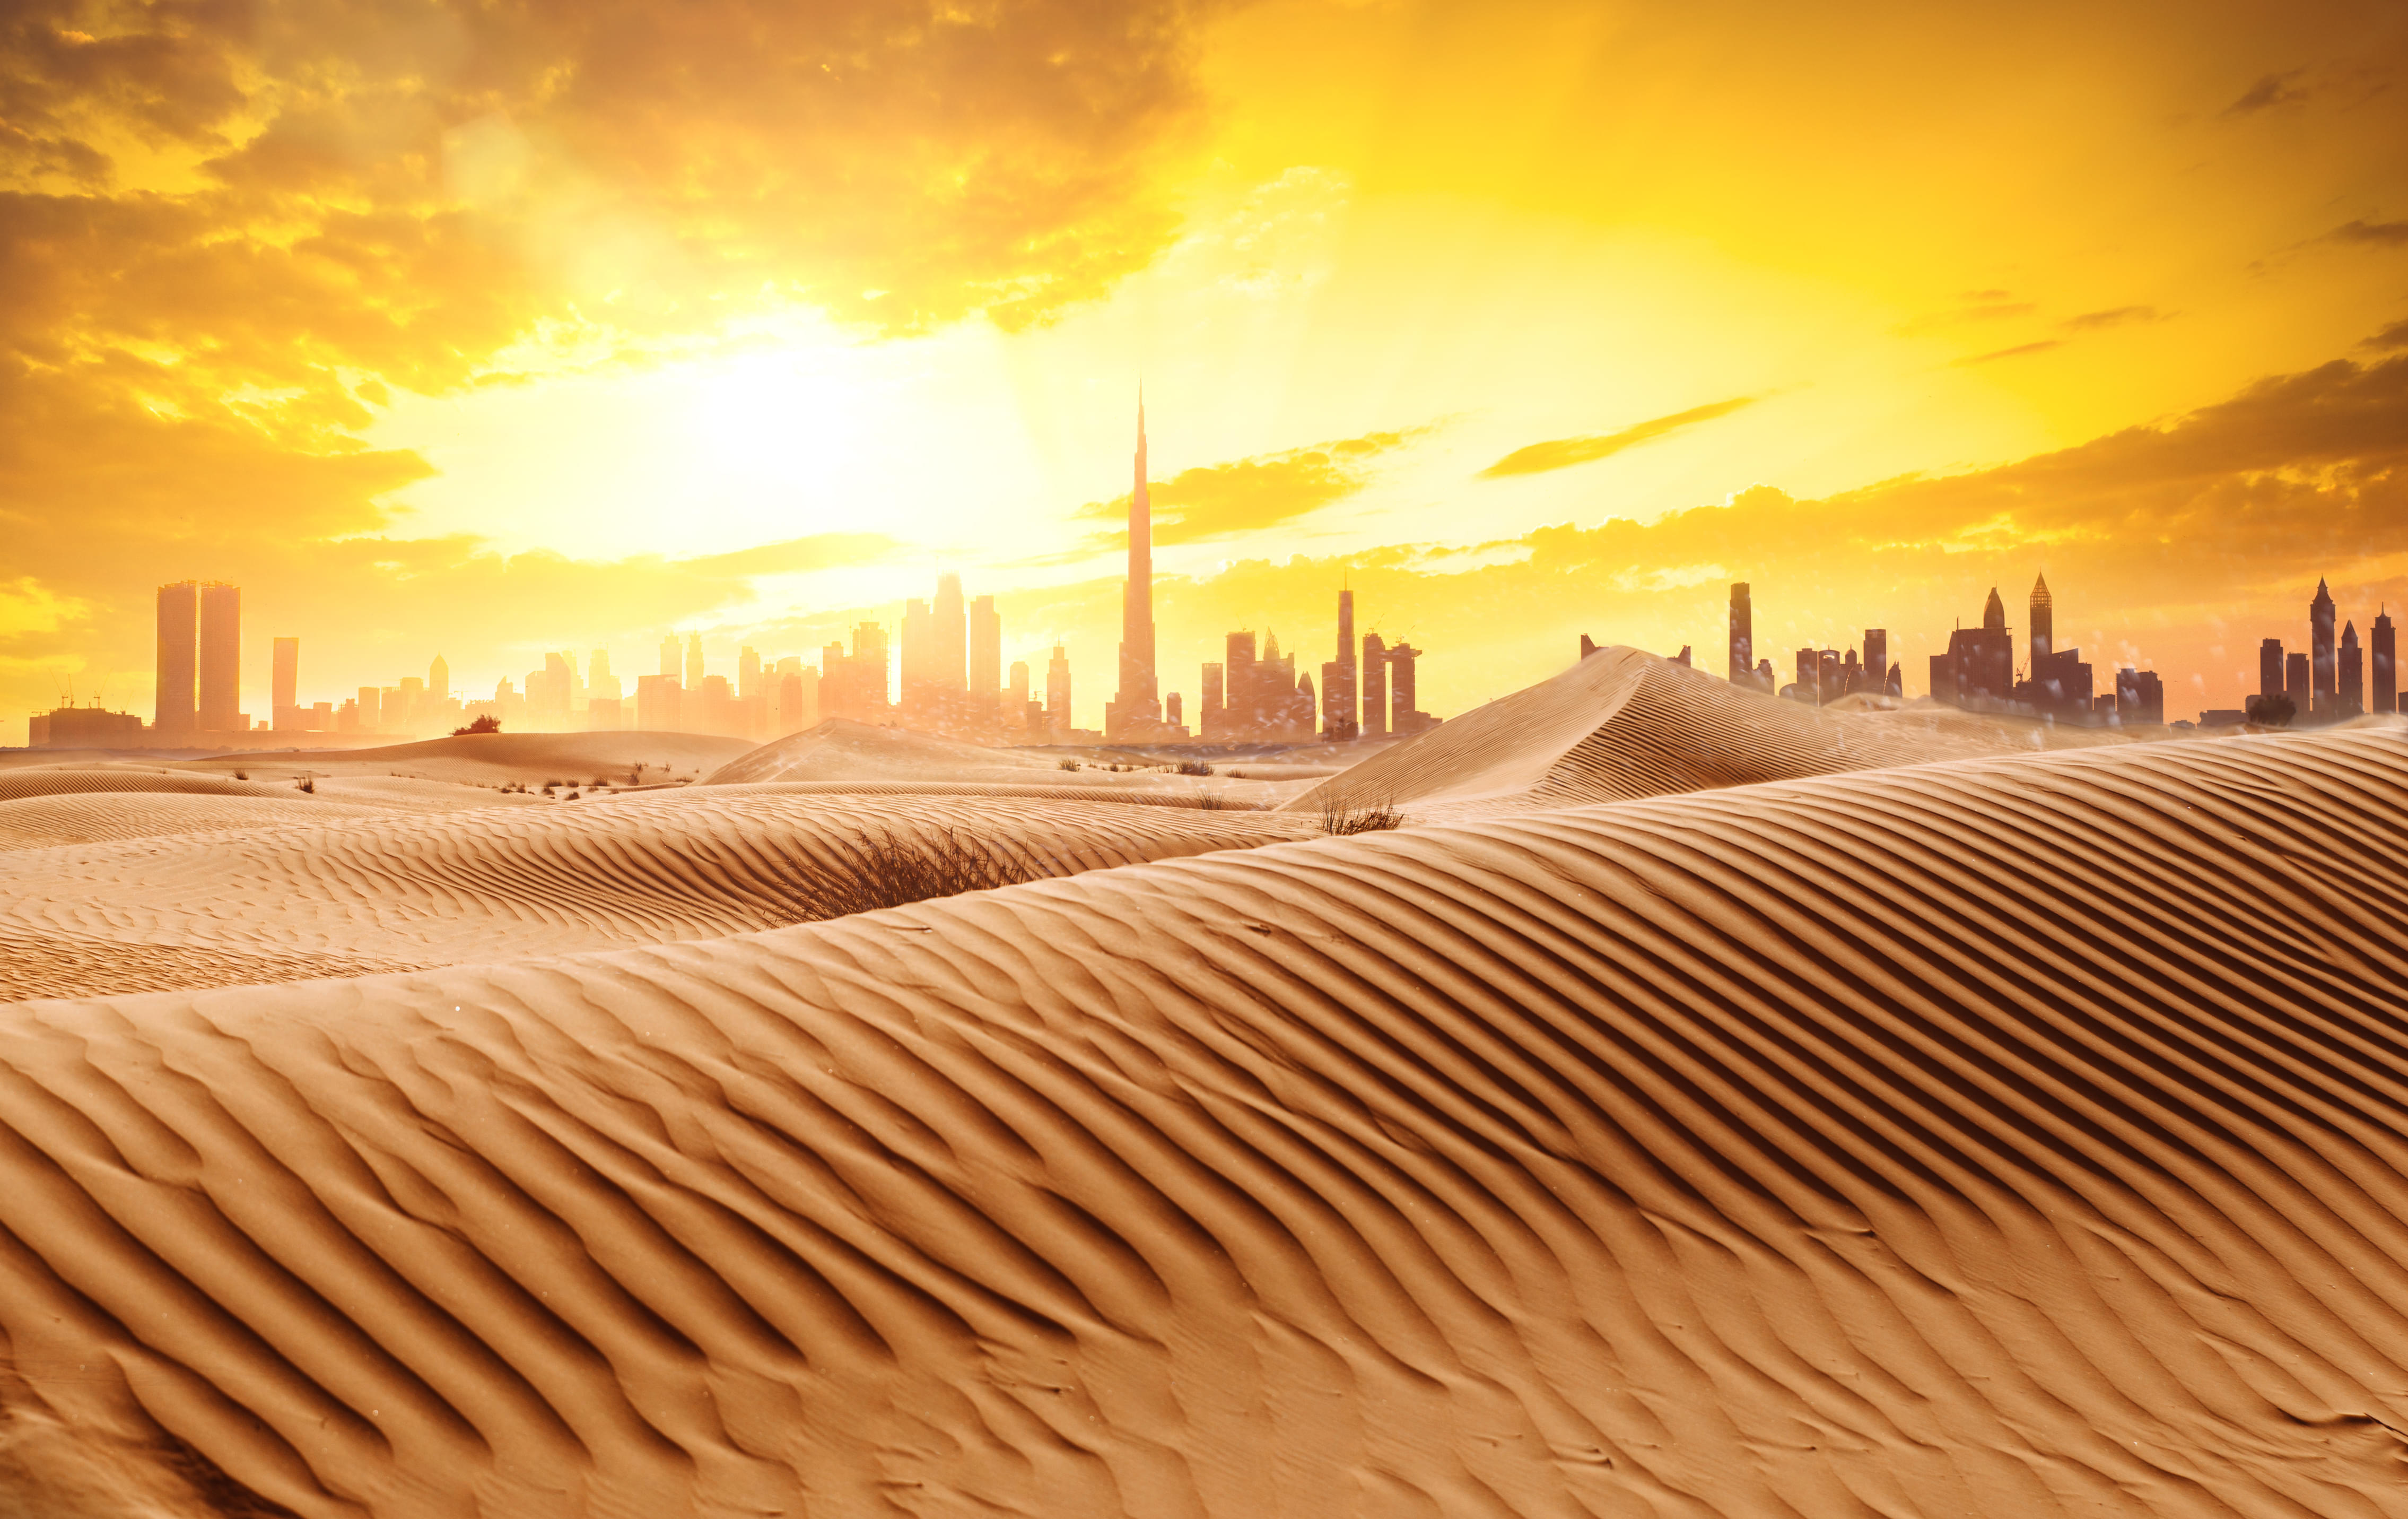 Desert View of Dubai